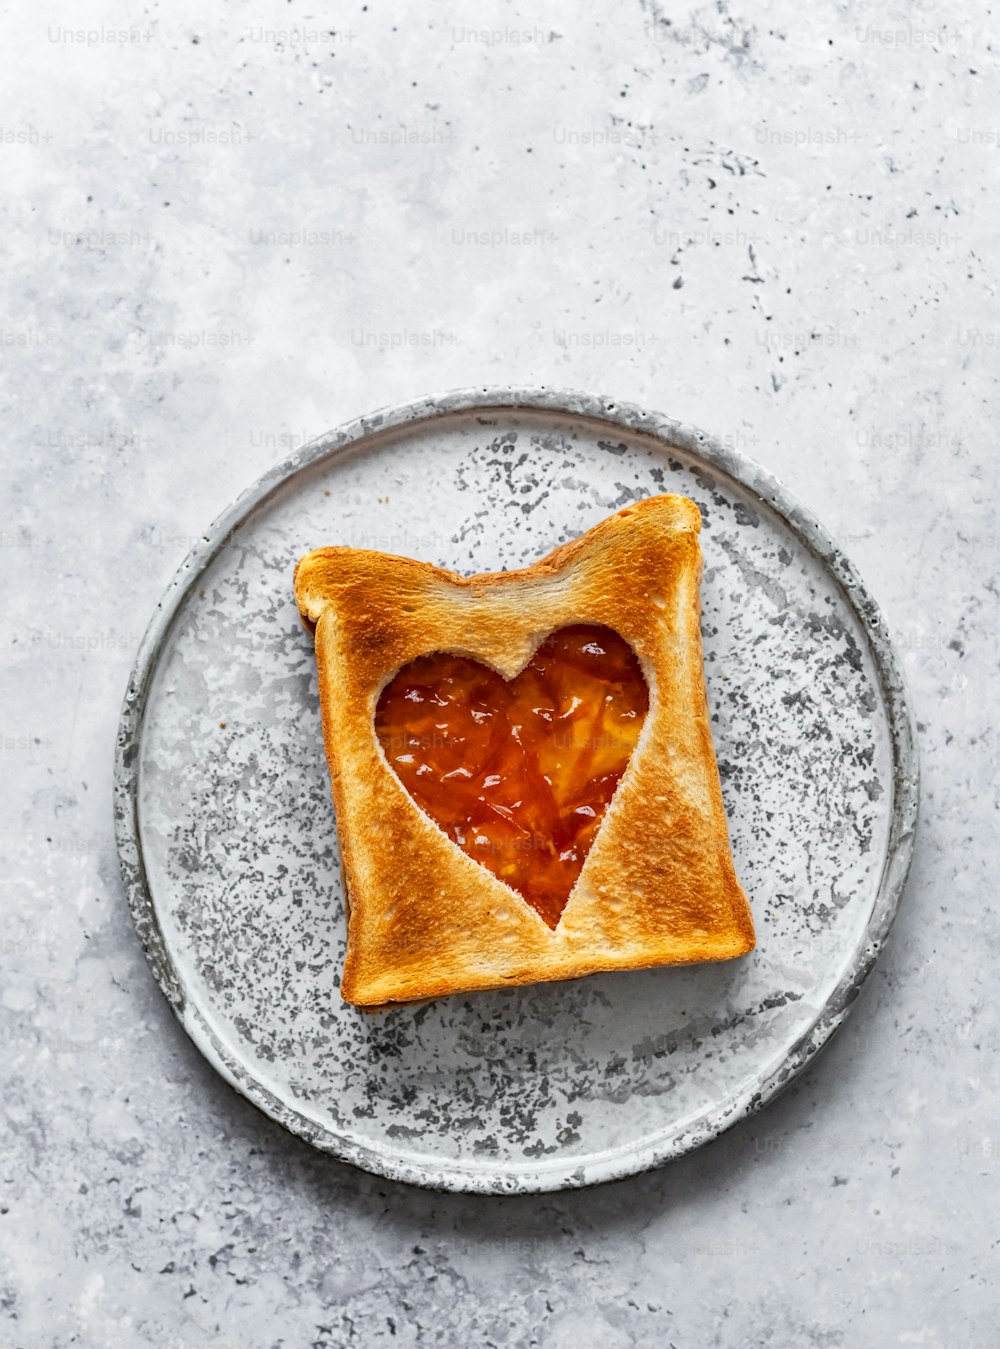 a heart shaped toast on a plate